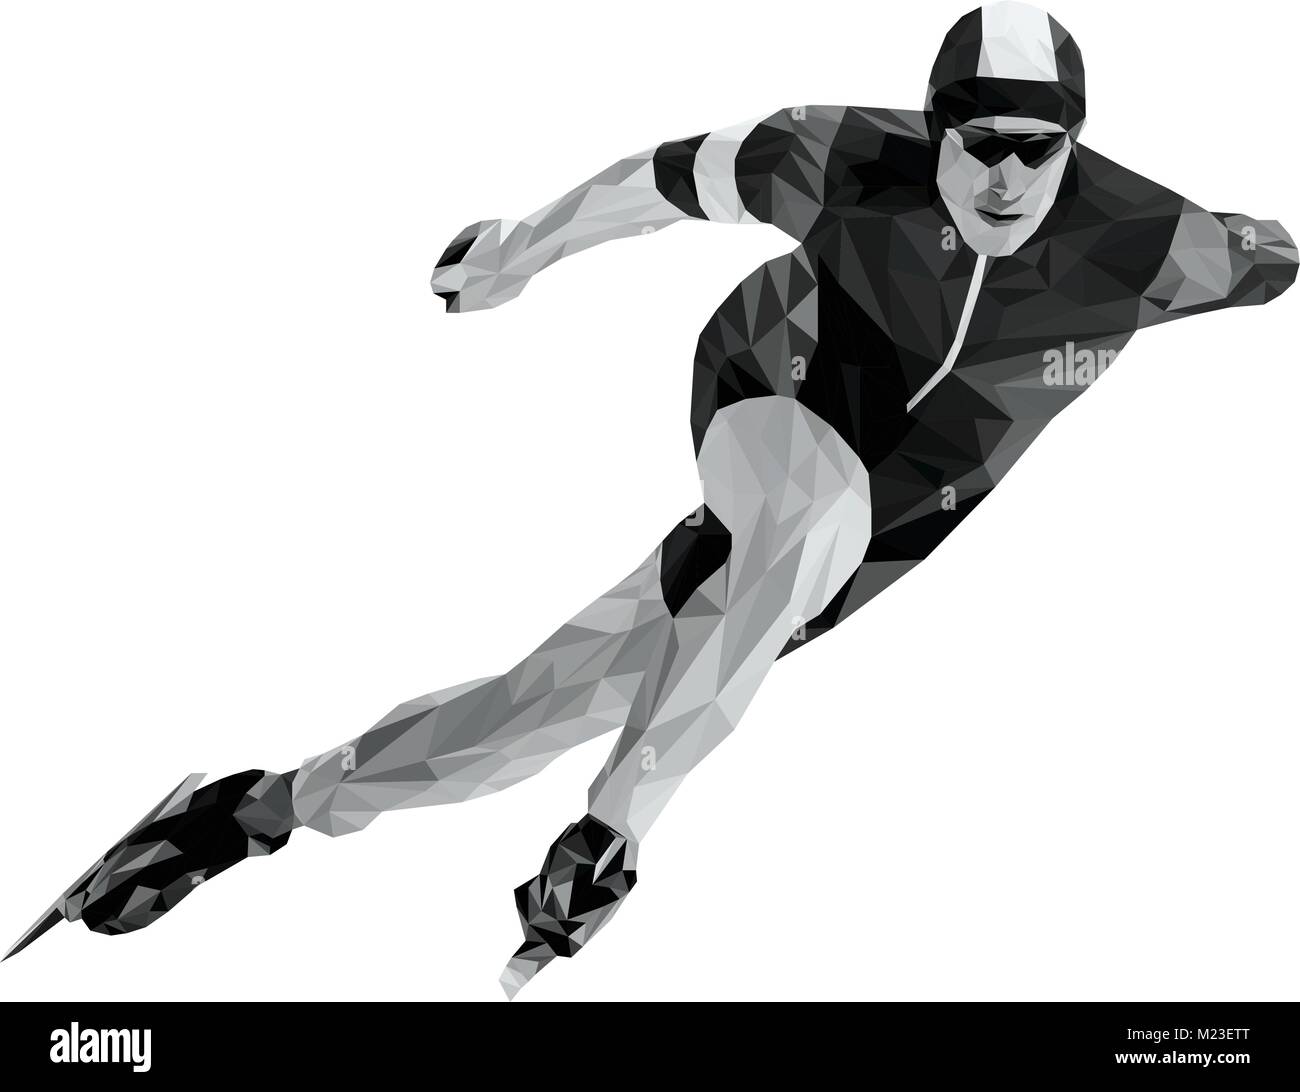 La patineuse de patinage de vitesse de l'athlète en noir et blanc poly bas Illustration de Vecteur